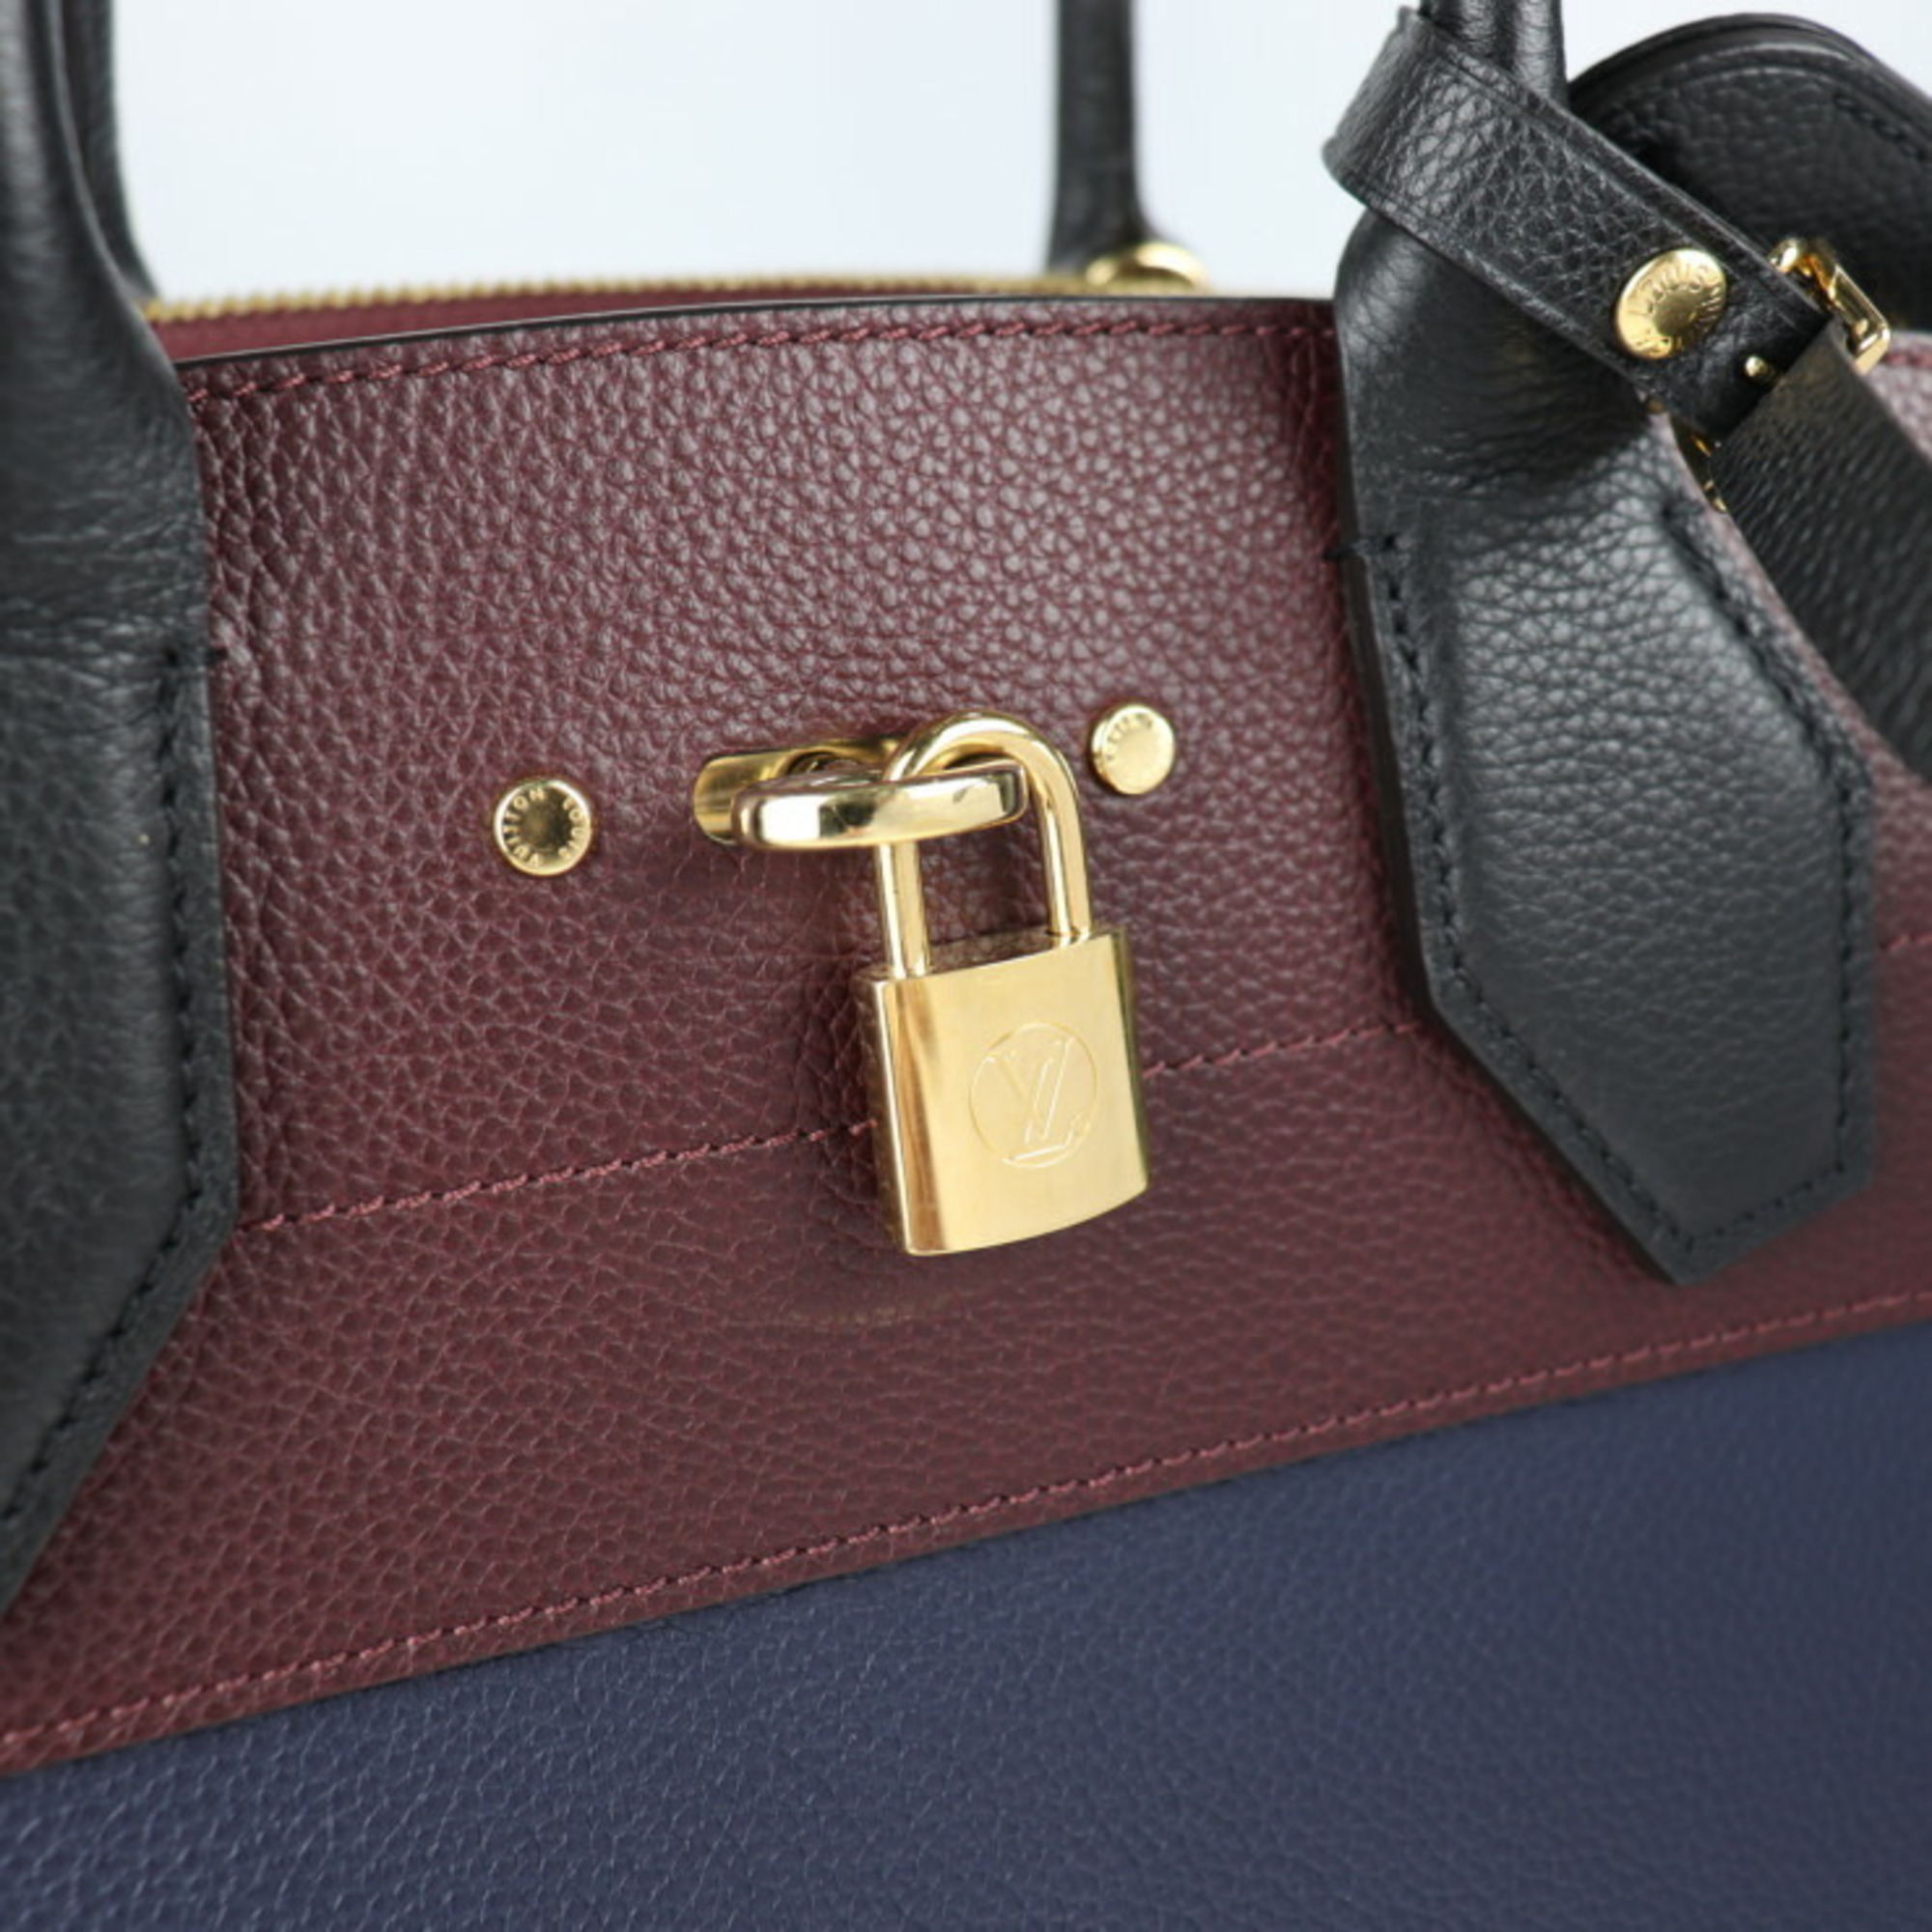 LOUIS VUITTON Louis Vuitton City Steamer MM Handbag M54260 Leather Marine Raisin Noir 2WAY Shoulder Bag Tote